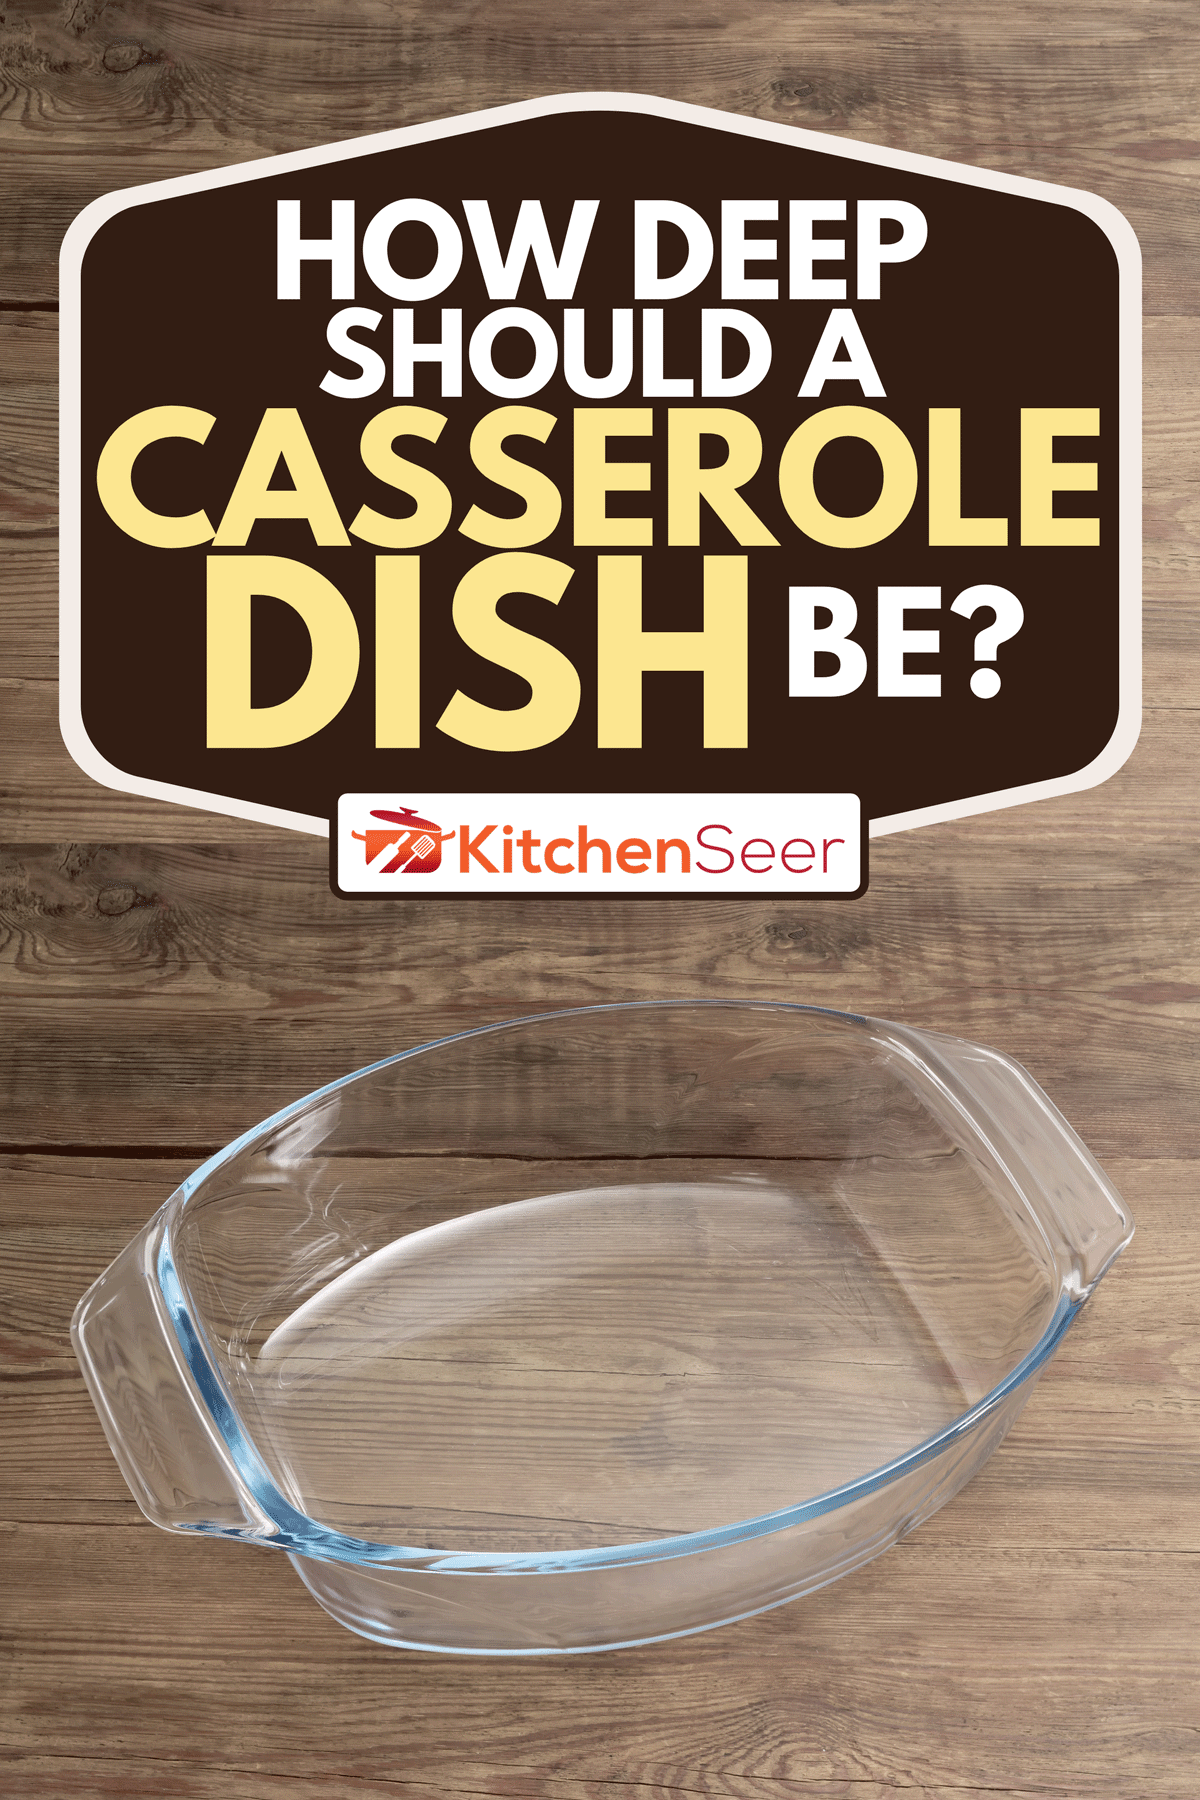 一个空的玻璃砂锅放在质朴的木头表面，砂锅应该有多深?